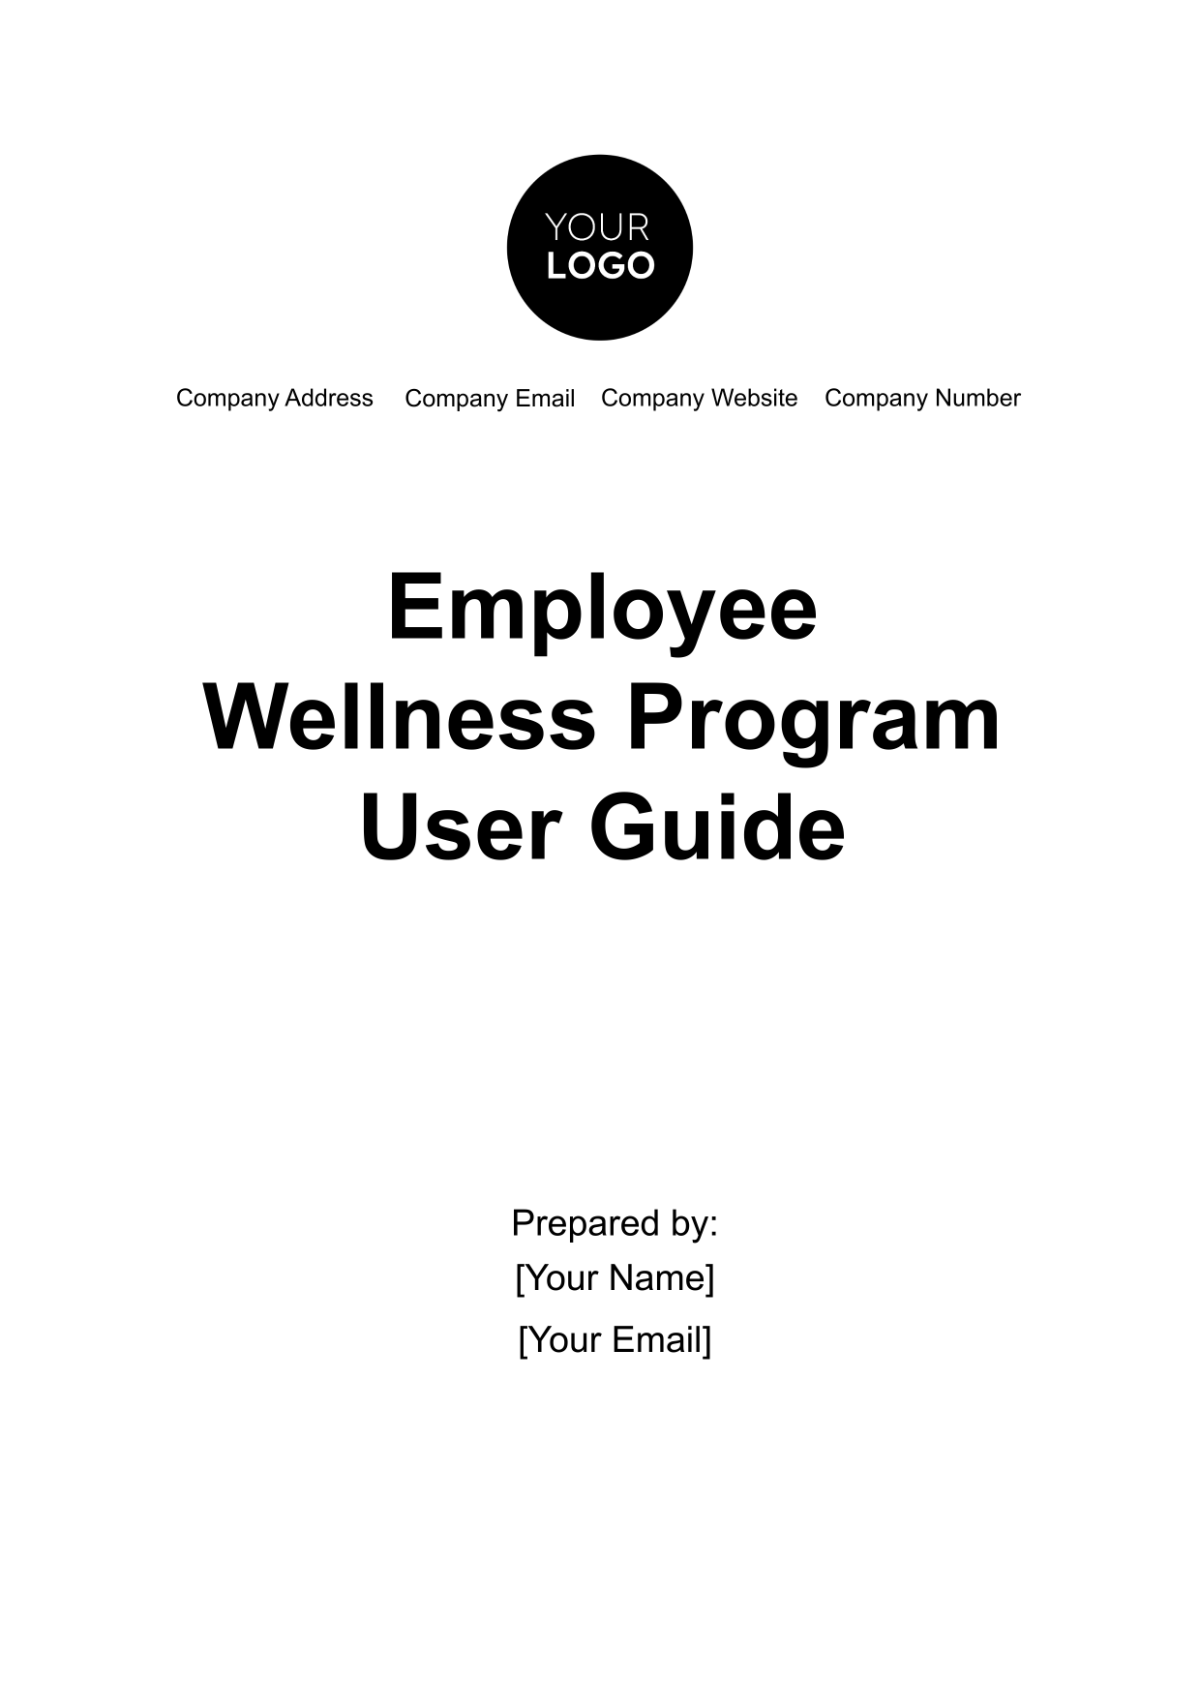 Employee Wellness Program User Guide Template